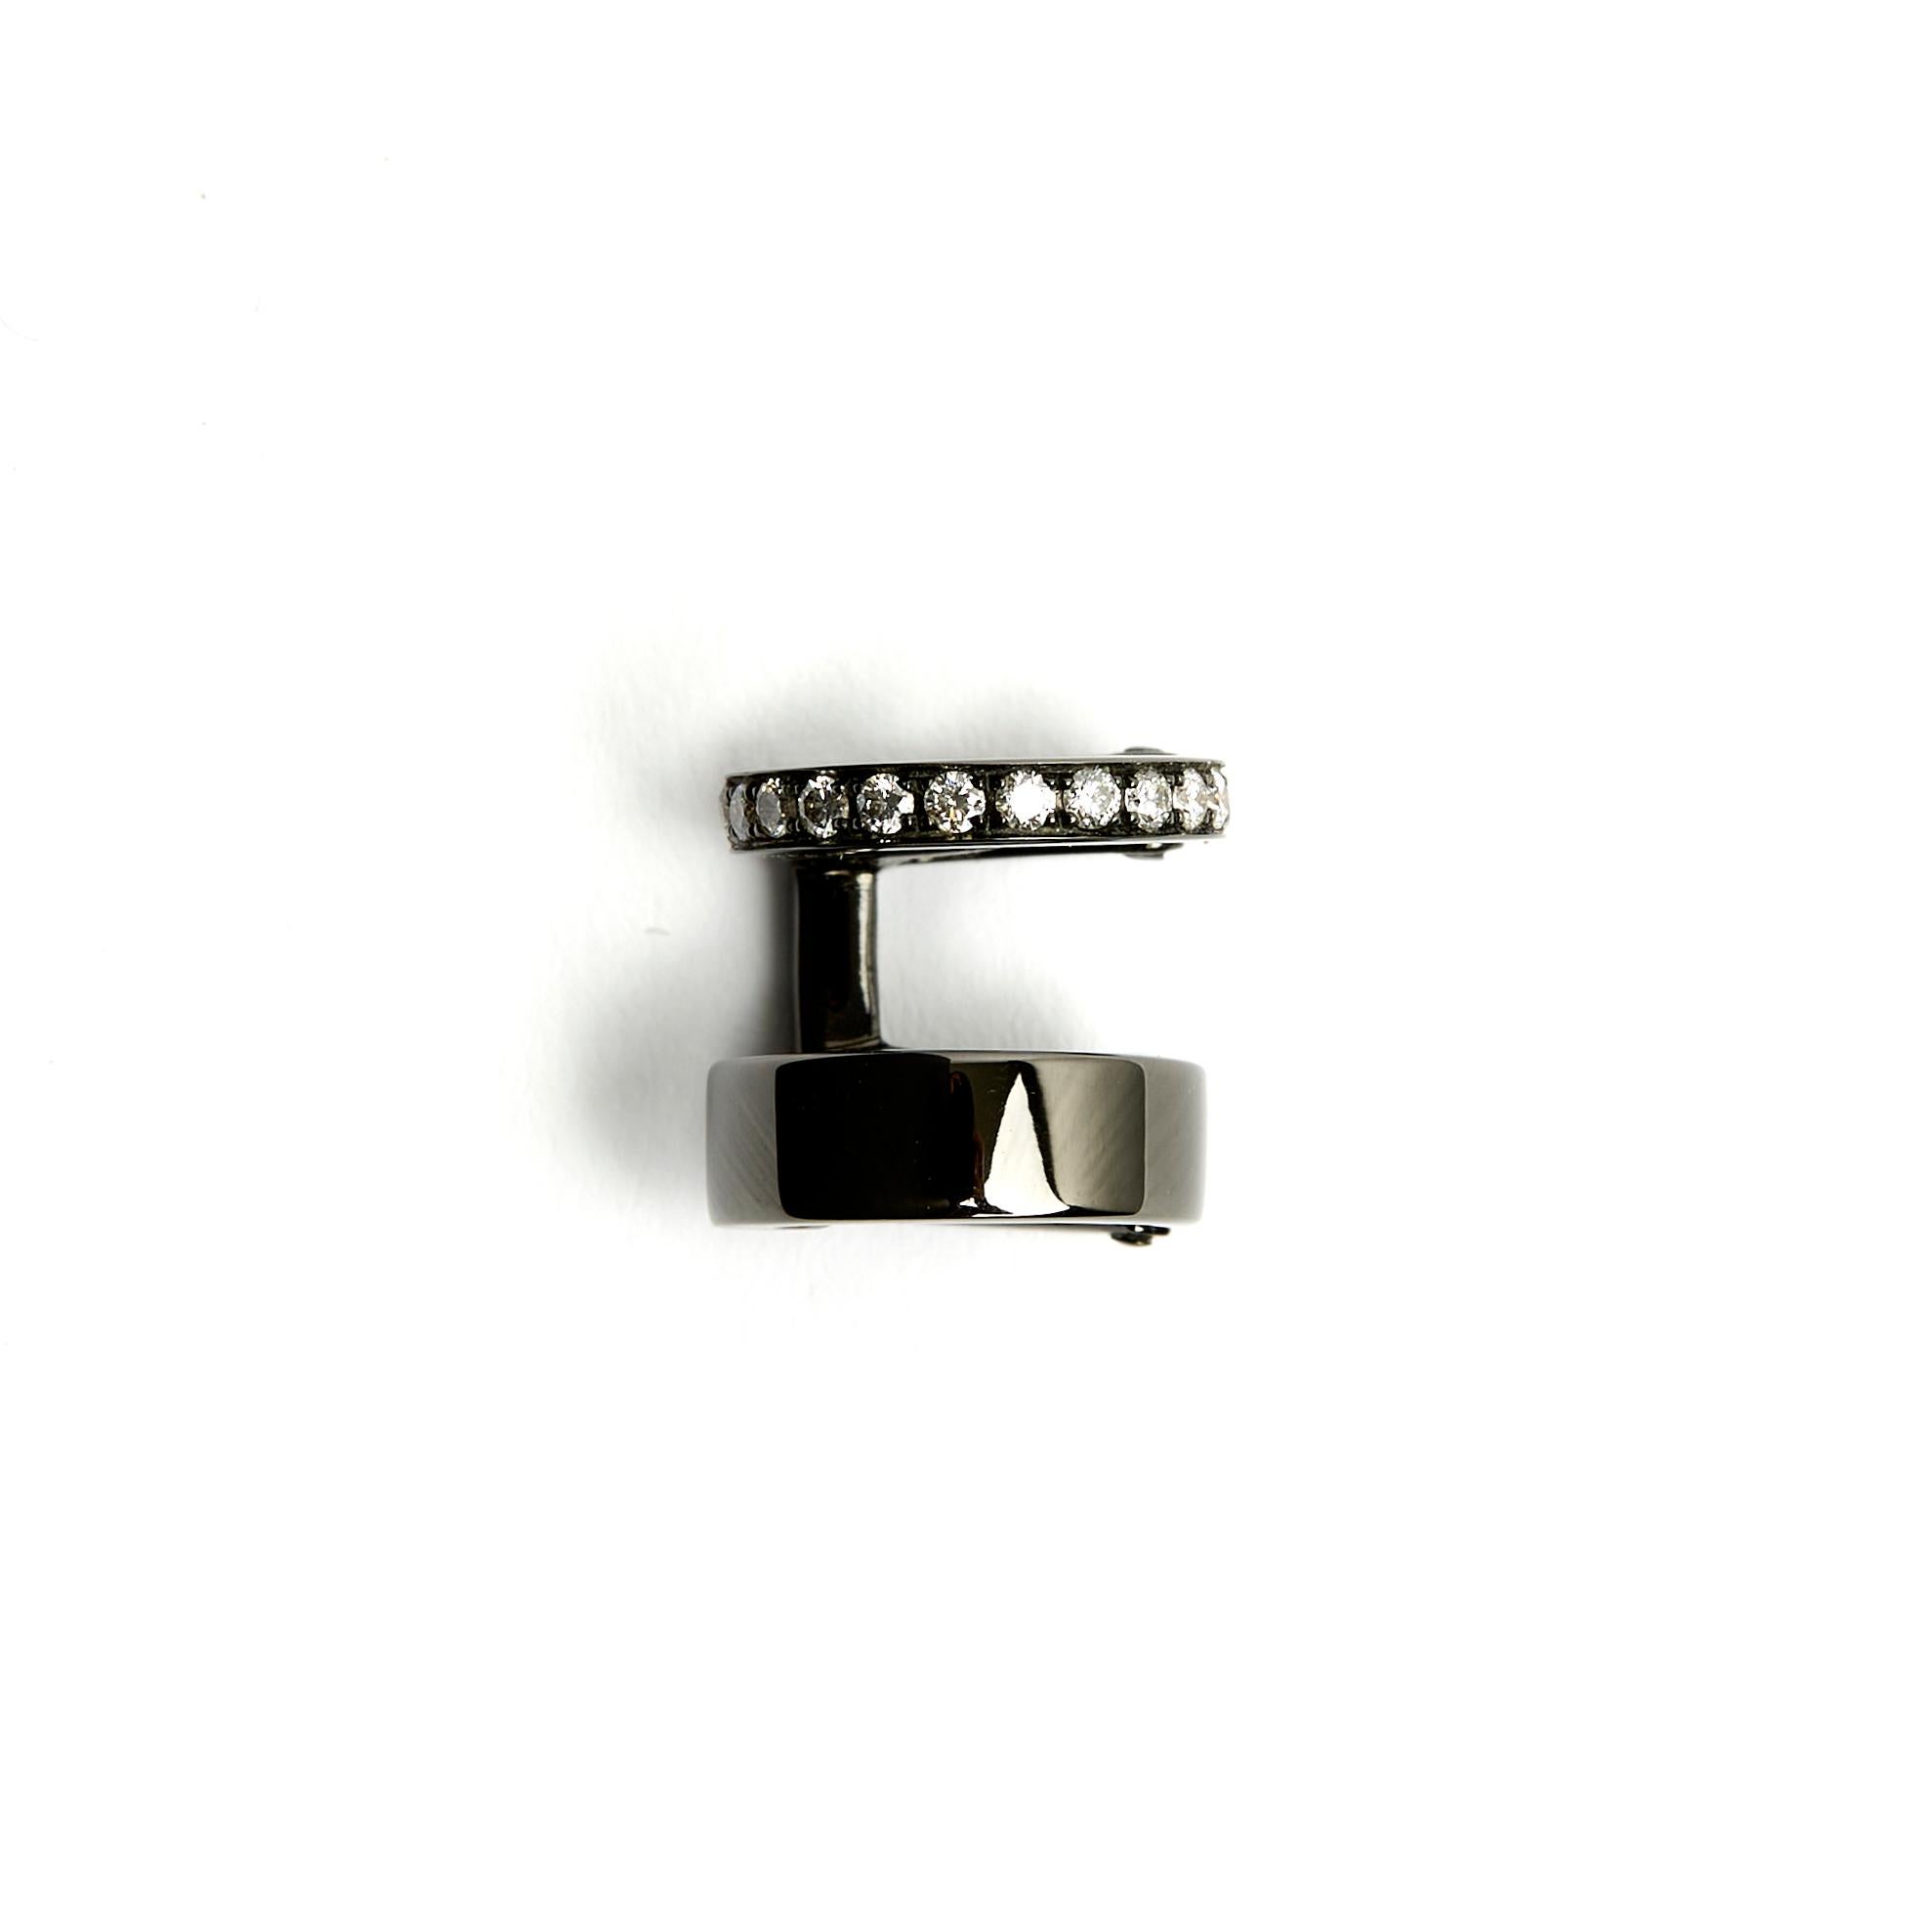 Repossi Clip-Ohrring Modell Berber aus Schwarzgold und Diamanten im Brillantschliff. Höhe 1,2 cm x Durchmesser 1,2 cm, Gewicht 4,63 gr. Der Ohrring ist vollkommen neu, wird mit Zertifikat und Reiseetui geliefert, ist wunderschön und rockt gut unter